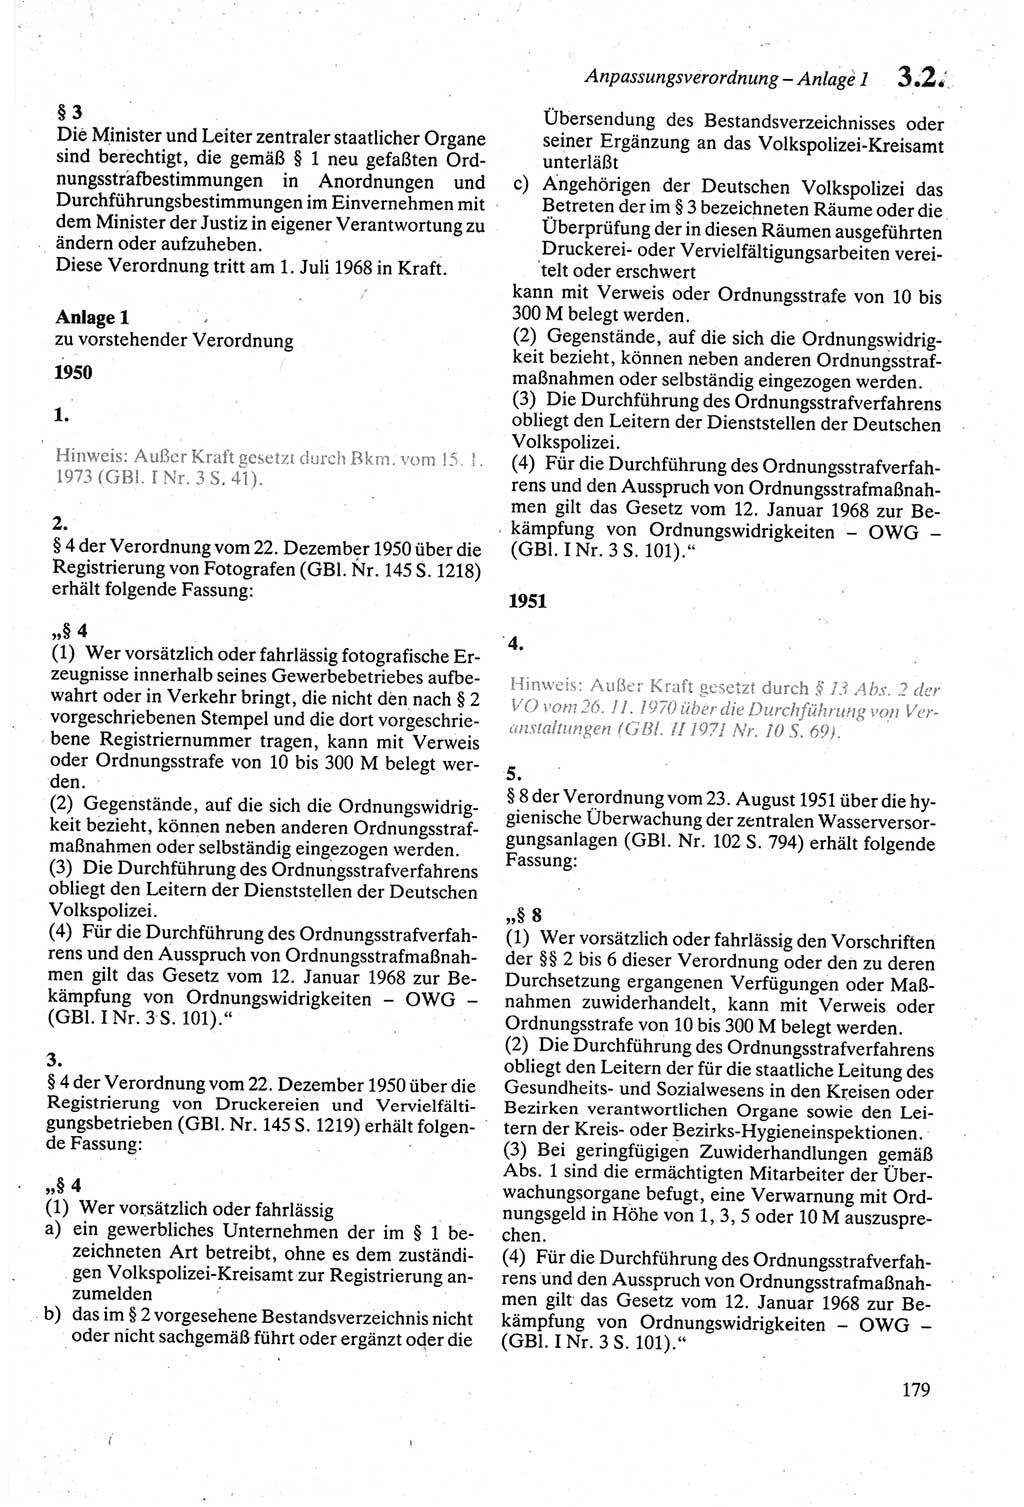 Strafgesetzbuch (StGB) der Deutschen Demokratischen Republik (DDR) sowie angrenzende Gesetze und Bestimmungen 1979, Seite 179 (StGB DDR Ges. Best. 1979, S. 179)